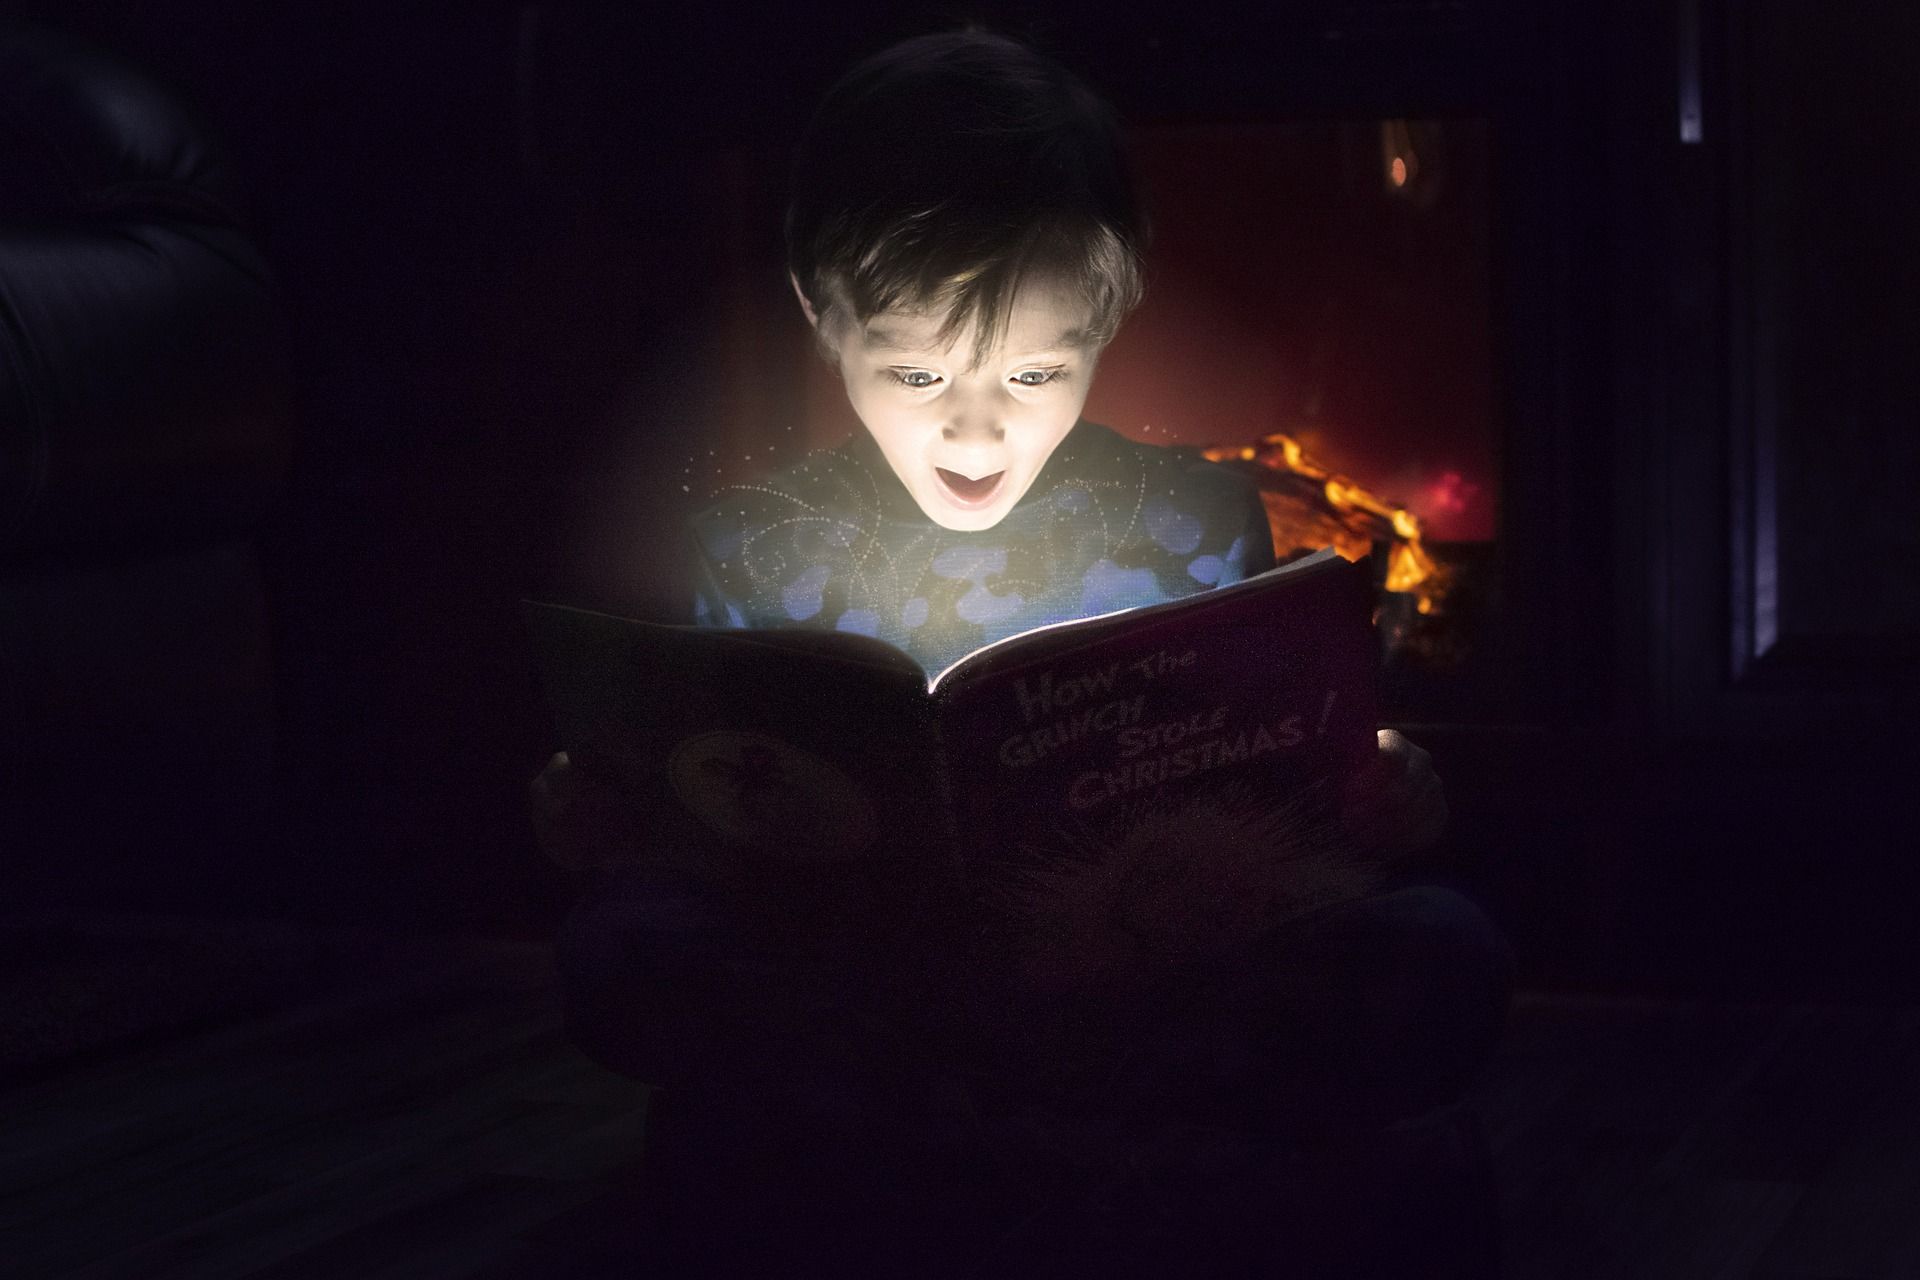 un enfant Ã©merveillÃ© lors d'une lecture - Image par saralcassidy de https://pixabay.com/fr/photos/en-train-de-lire-surpris-3969956/